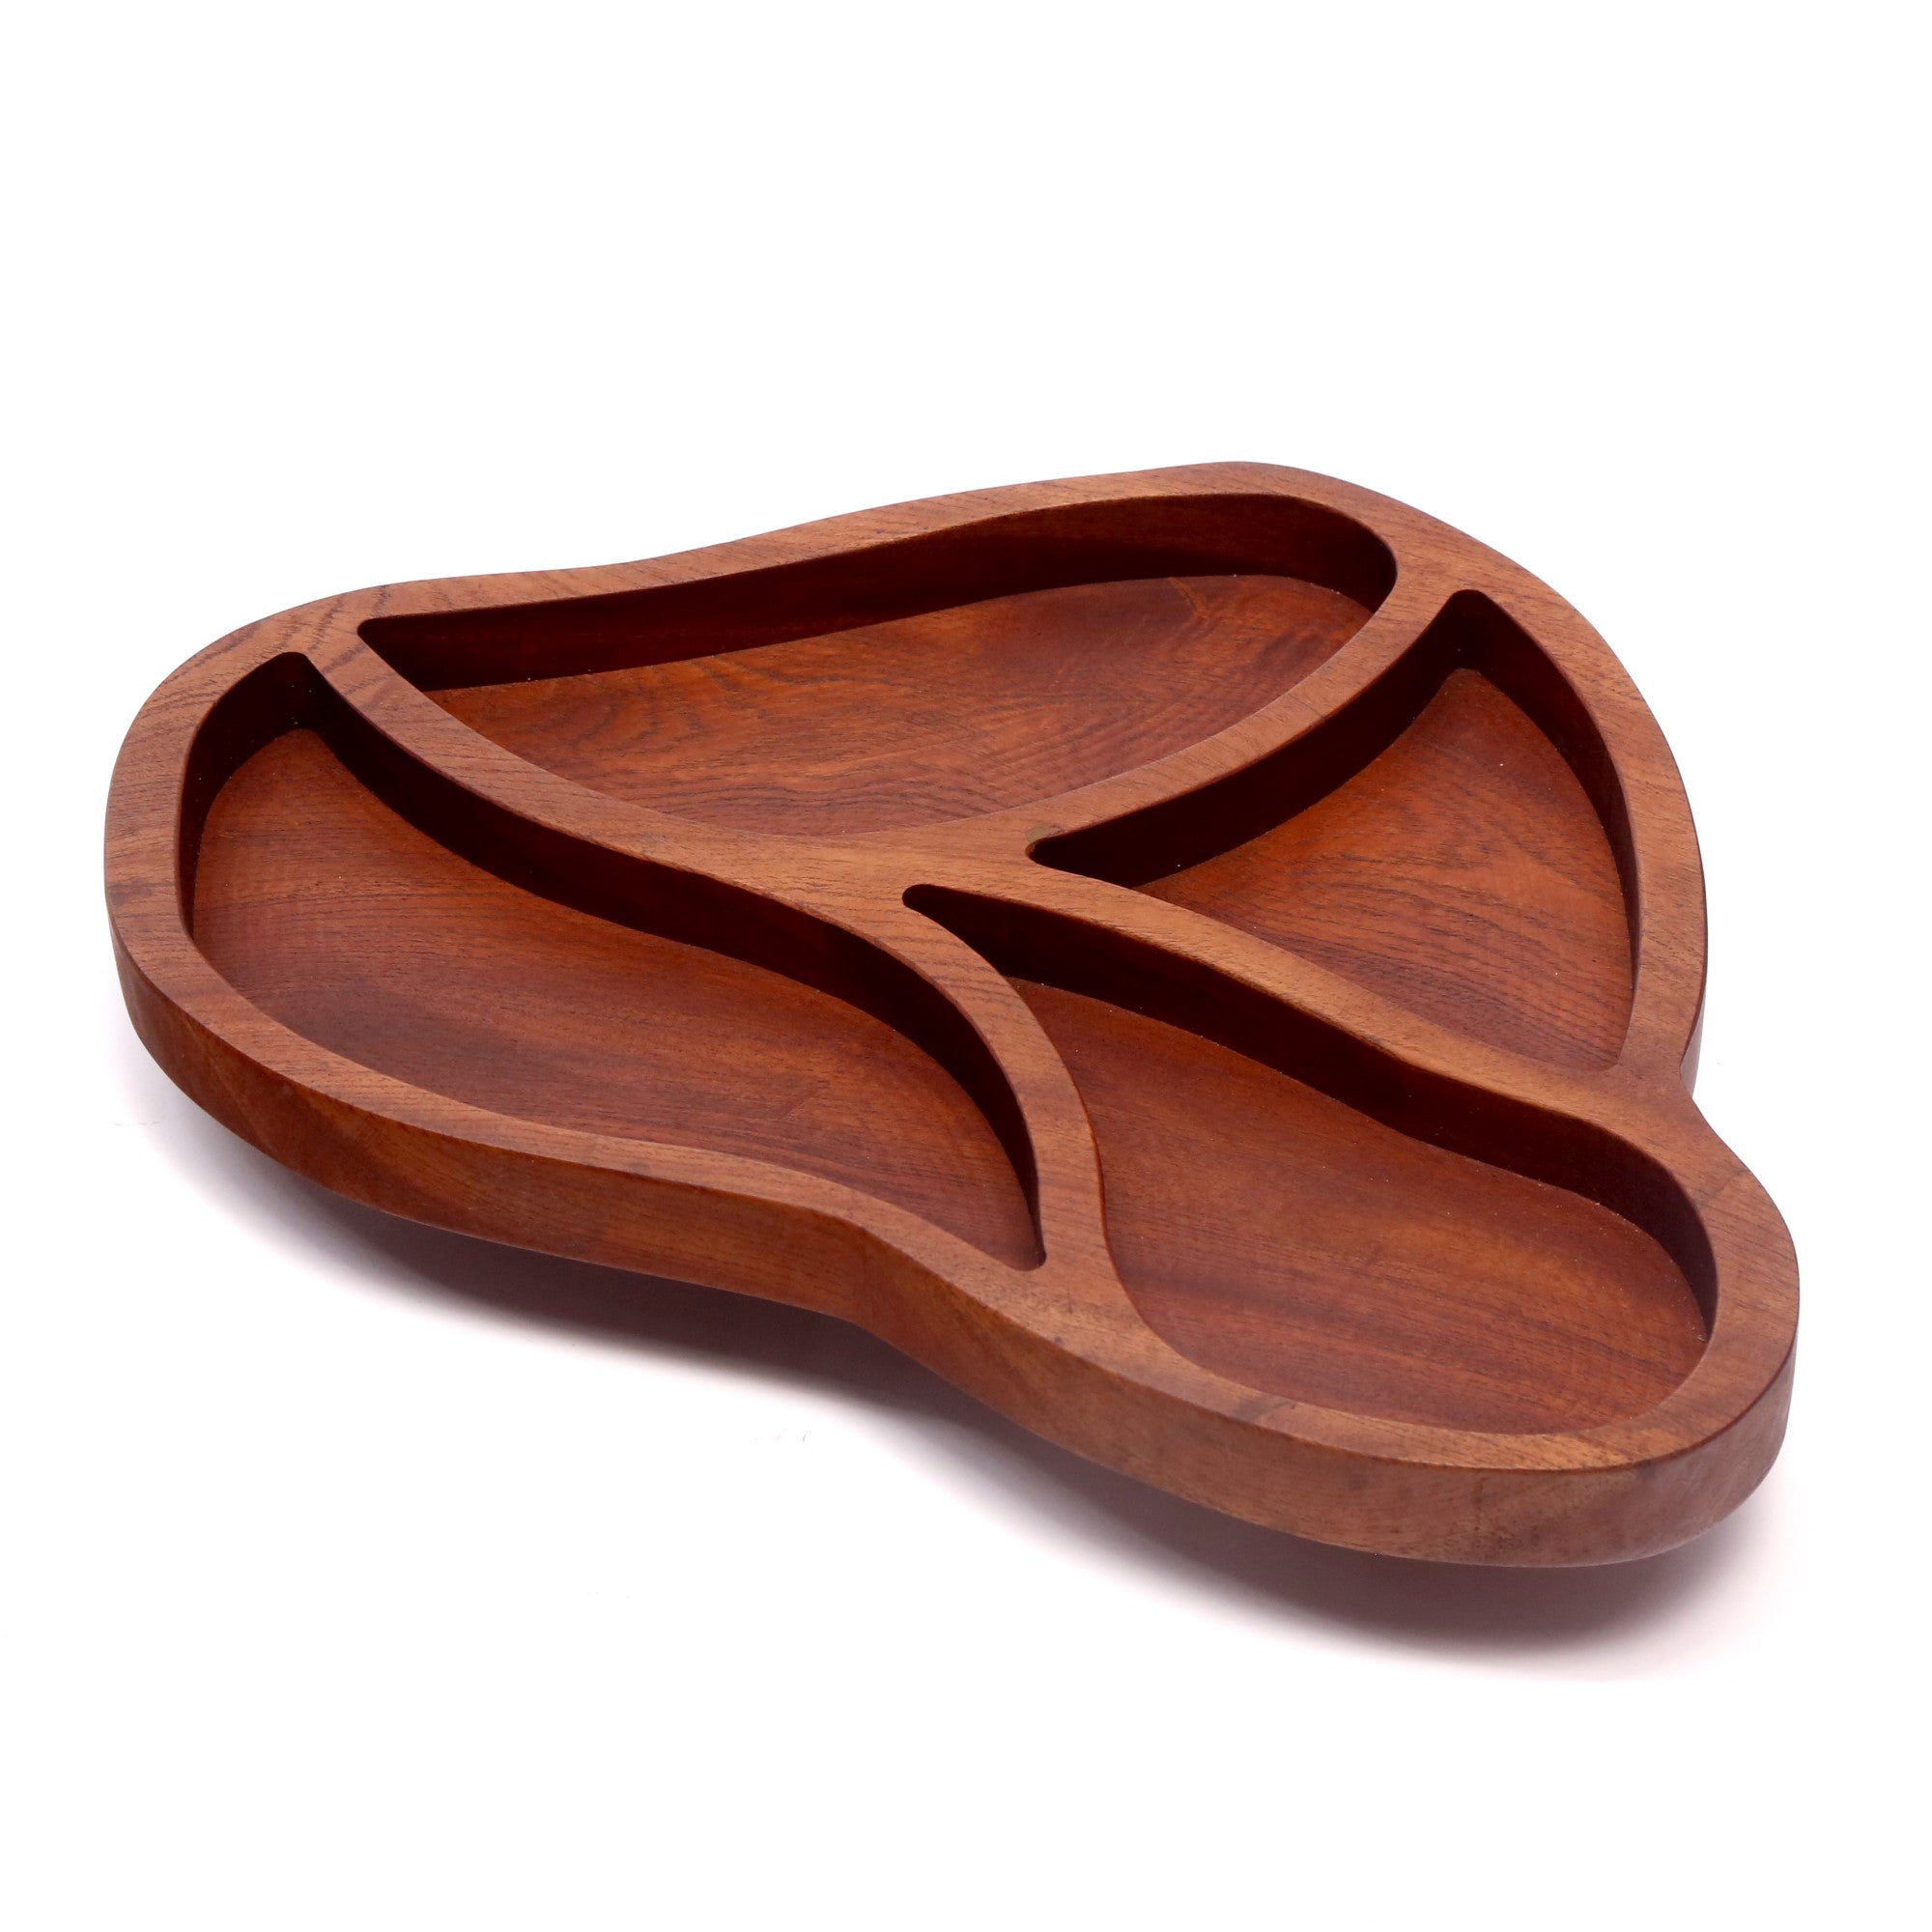 Earth inspired designed wooden platter Platter